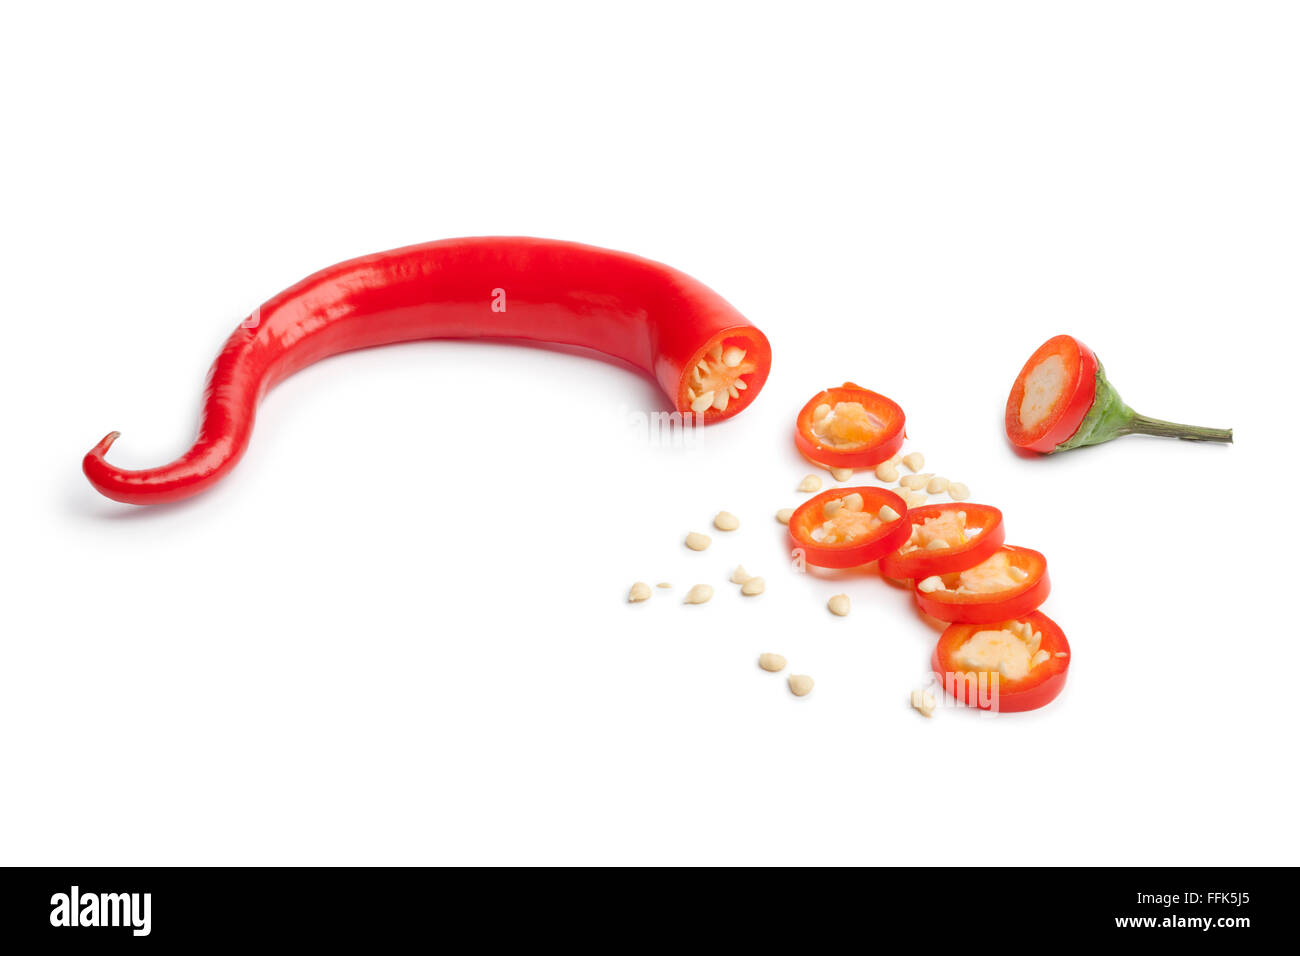 Dolce peperone rosso tagliato a fettine su sfondo bianco Foto Stock